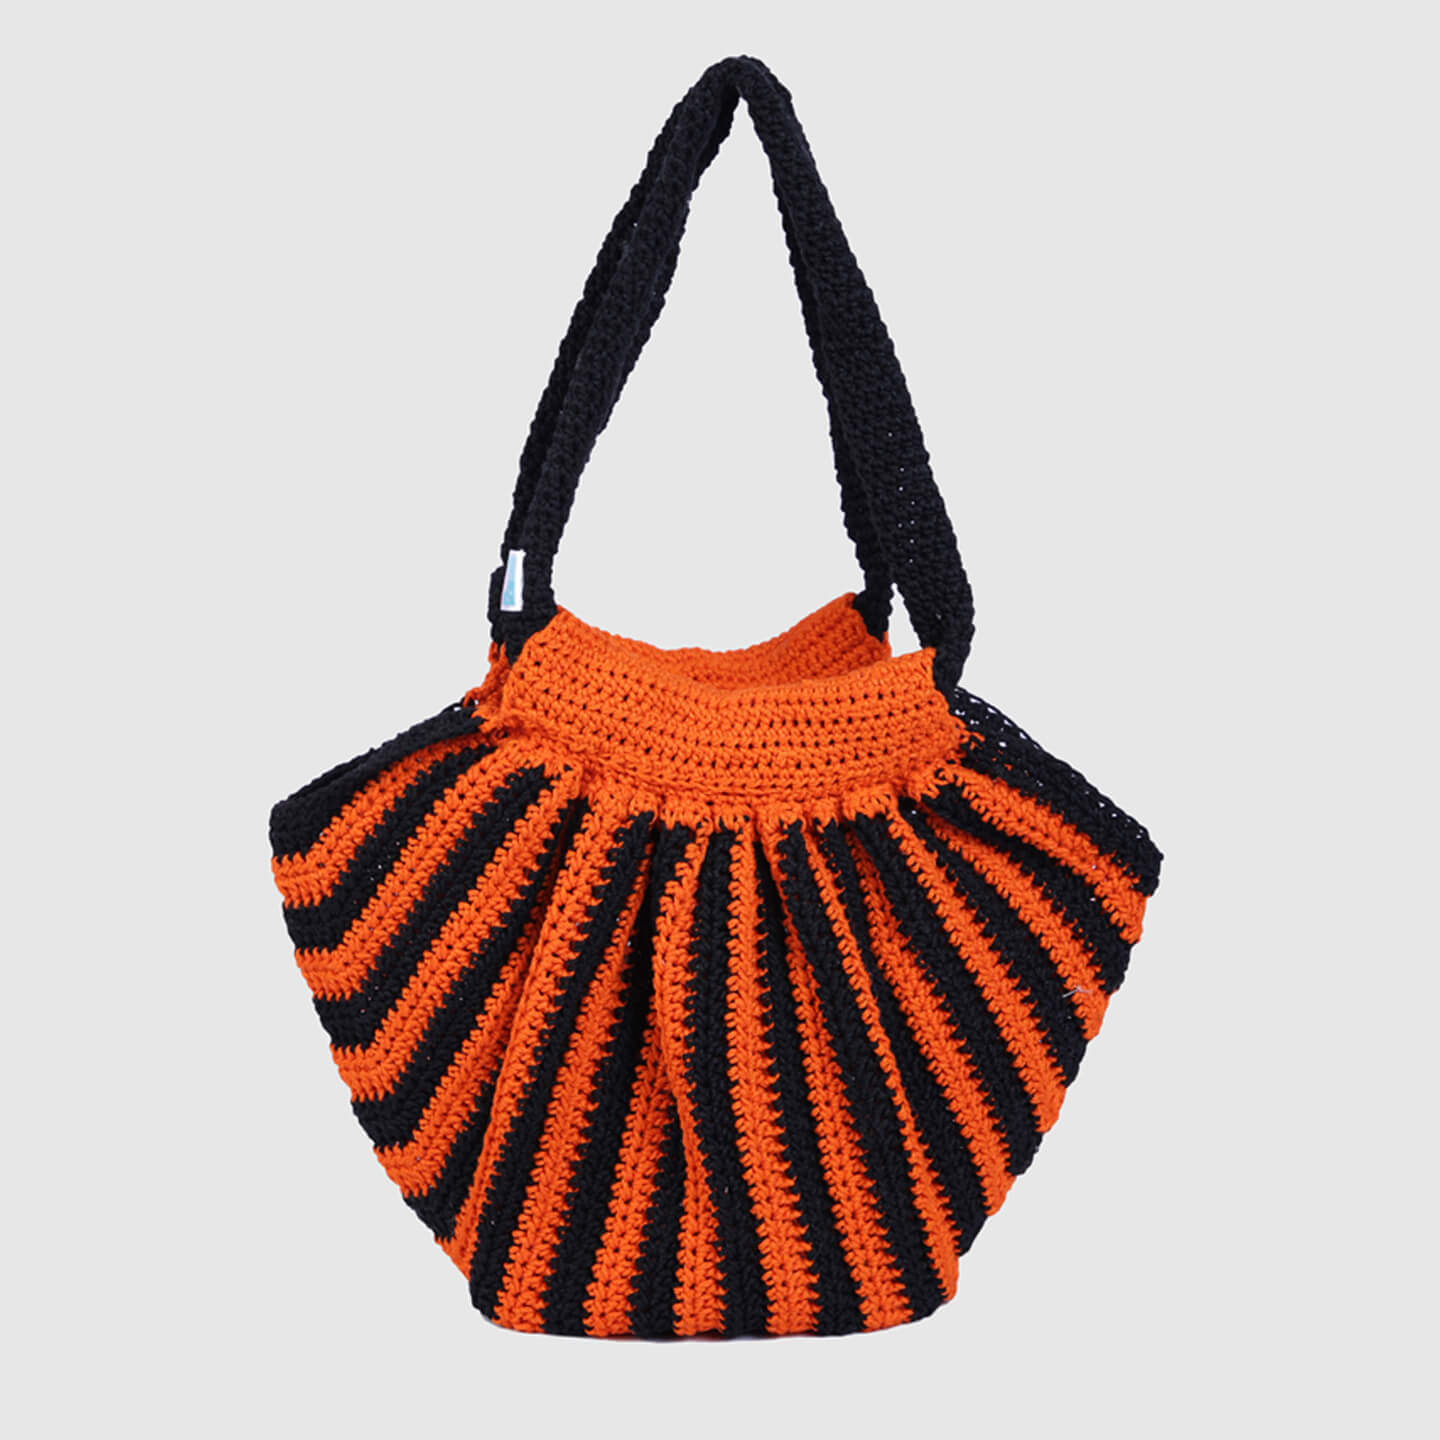 Handmade Crochet Bag - Orange & Black 3117